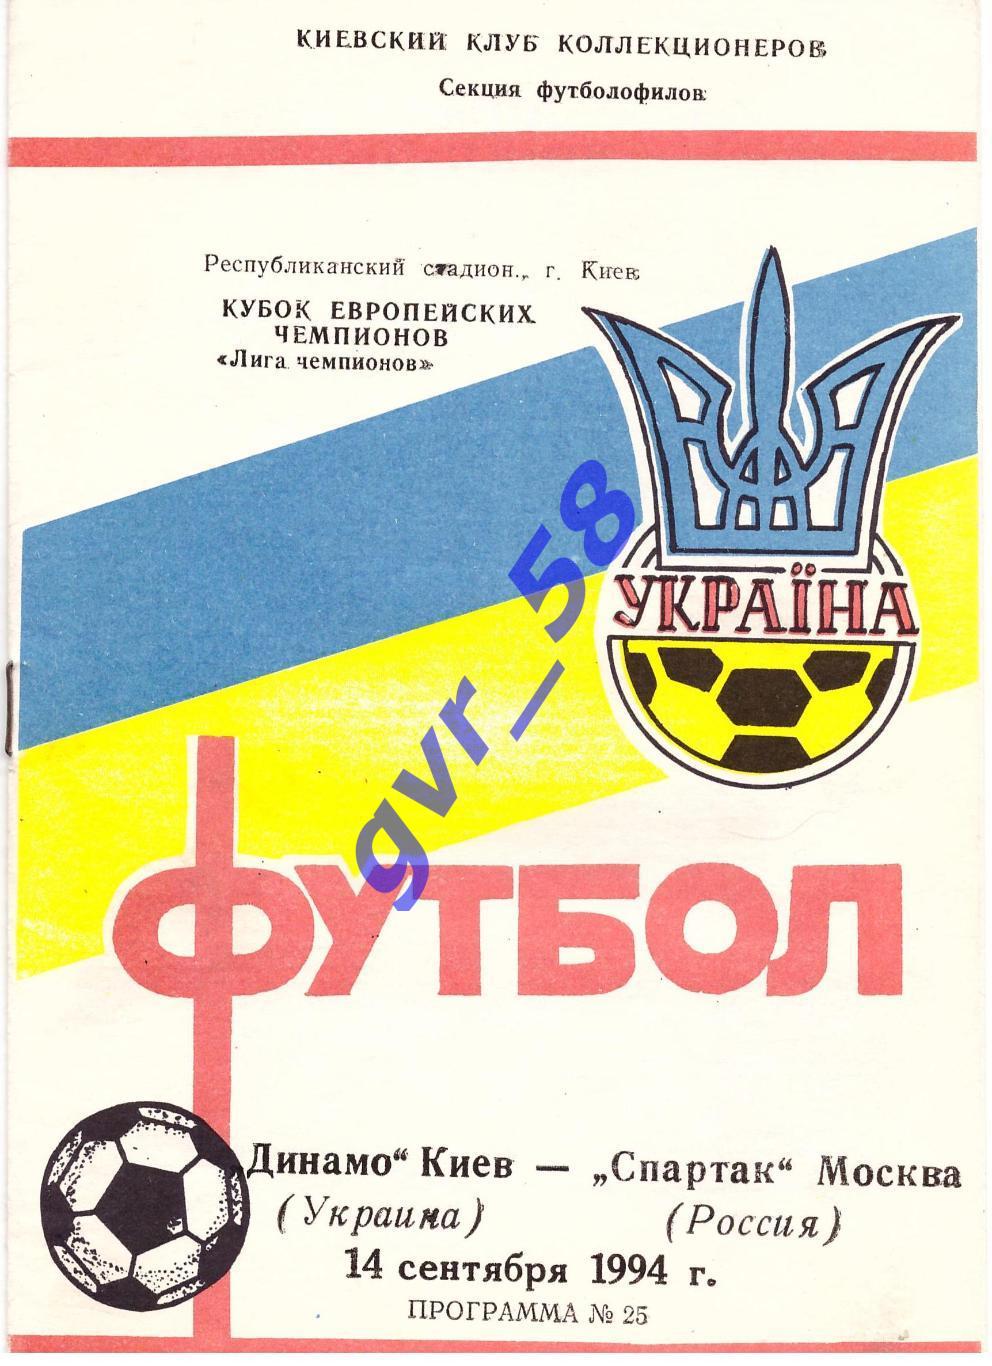 Динамо Киев - Спартак Москва 14.09.1994